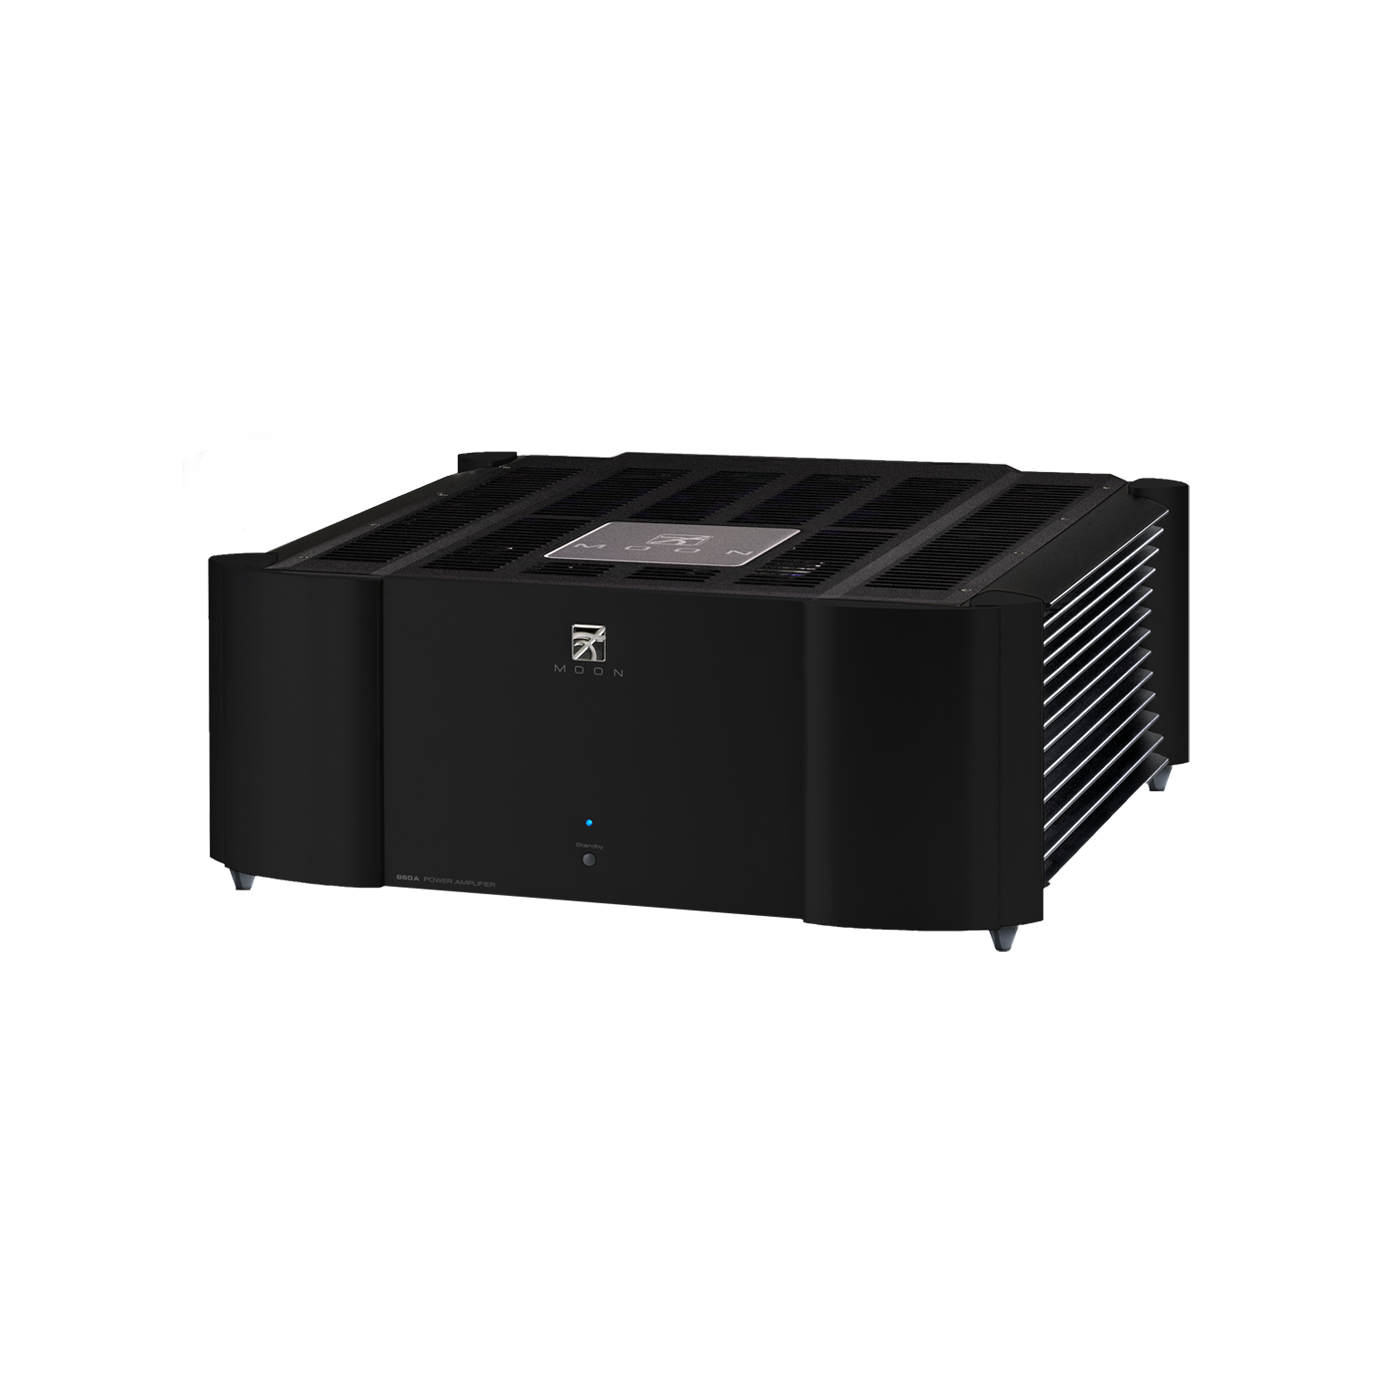 Усилители мощности Sim Audio 860A v2 Цвет: Черный [Black] усилители мощности monitor audio ia200 2c ma2150